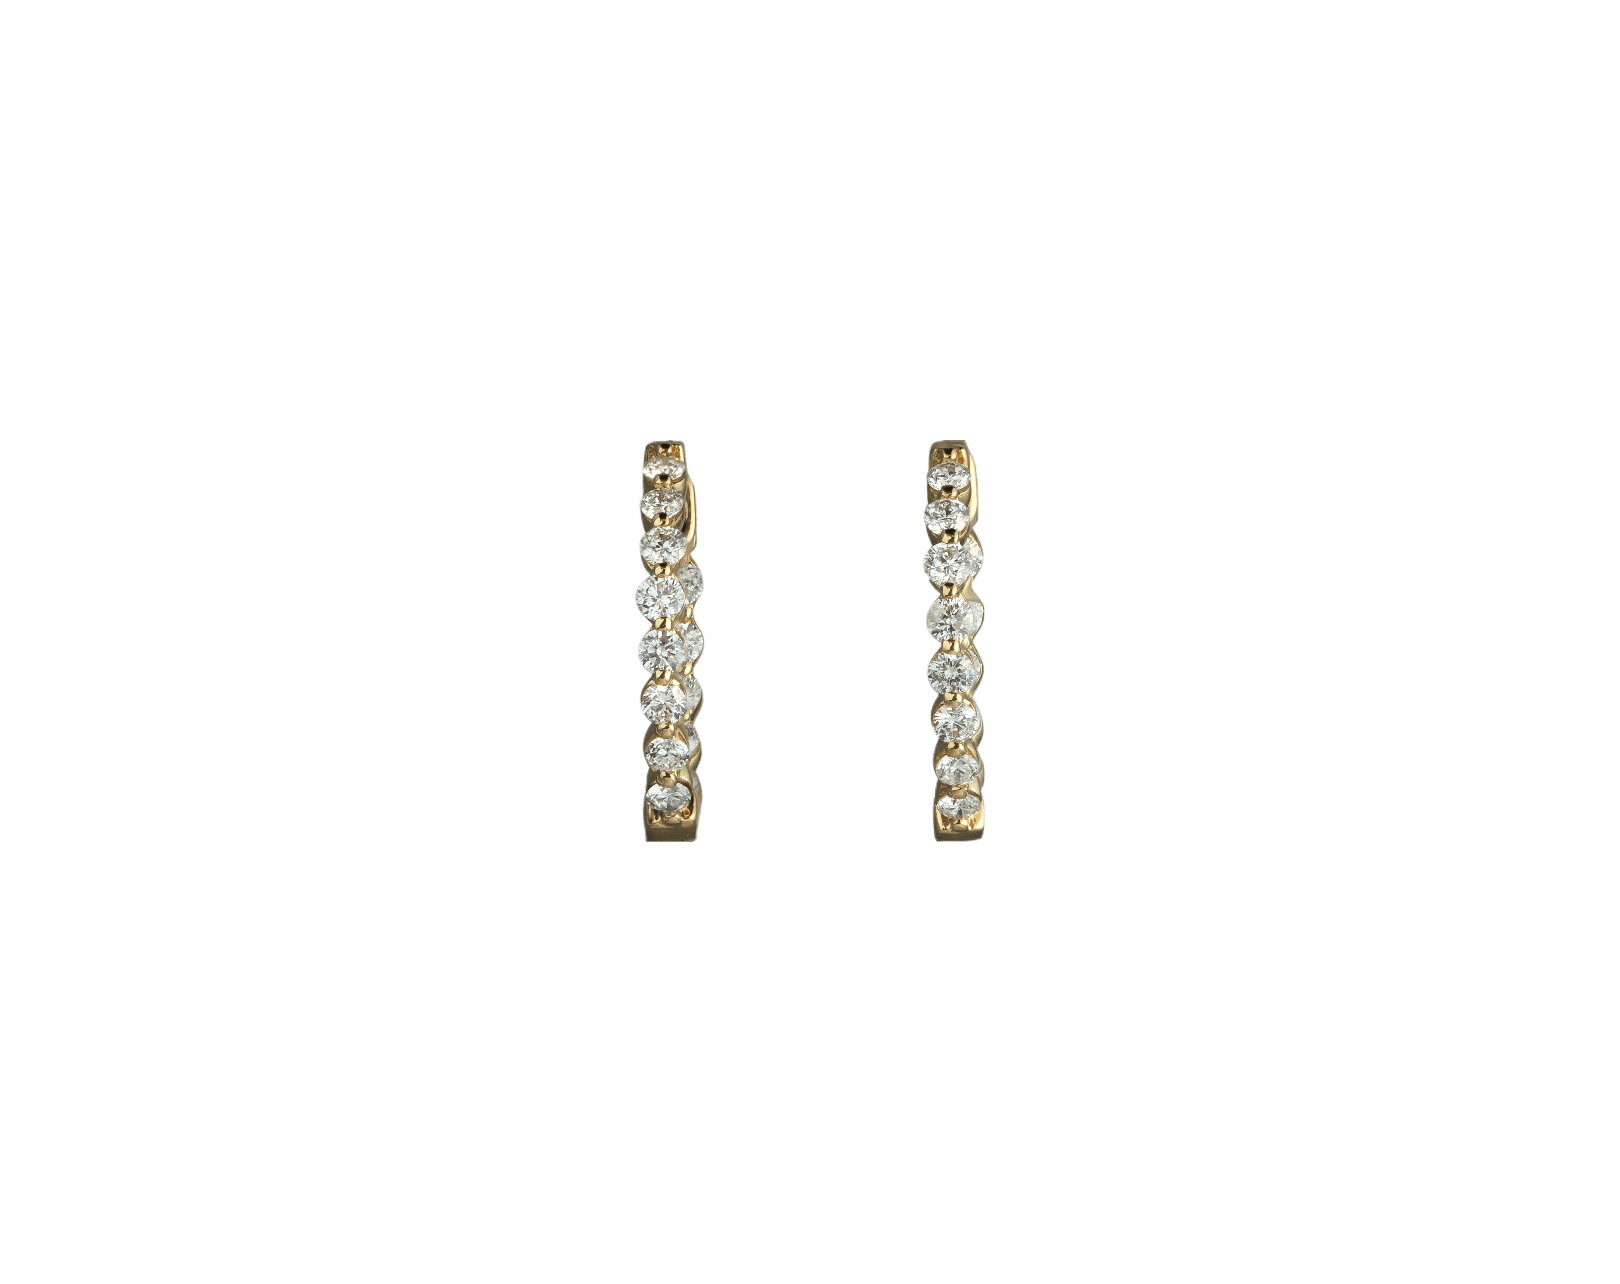 Small Diamond Hoop Earrings in Yellow Gold - Earrings - Leviev Diamonds